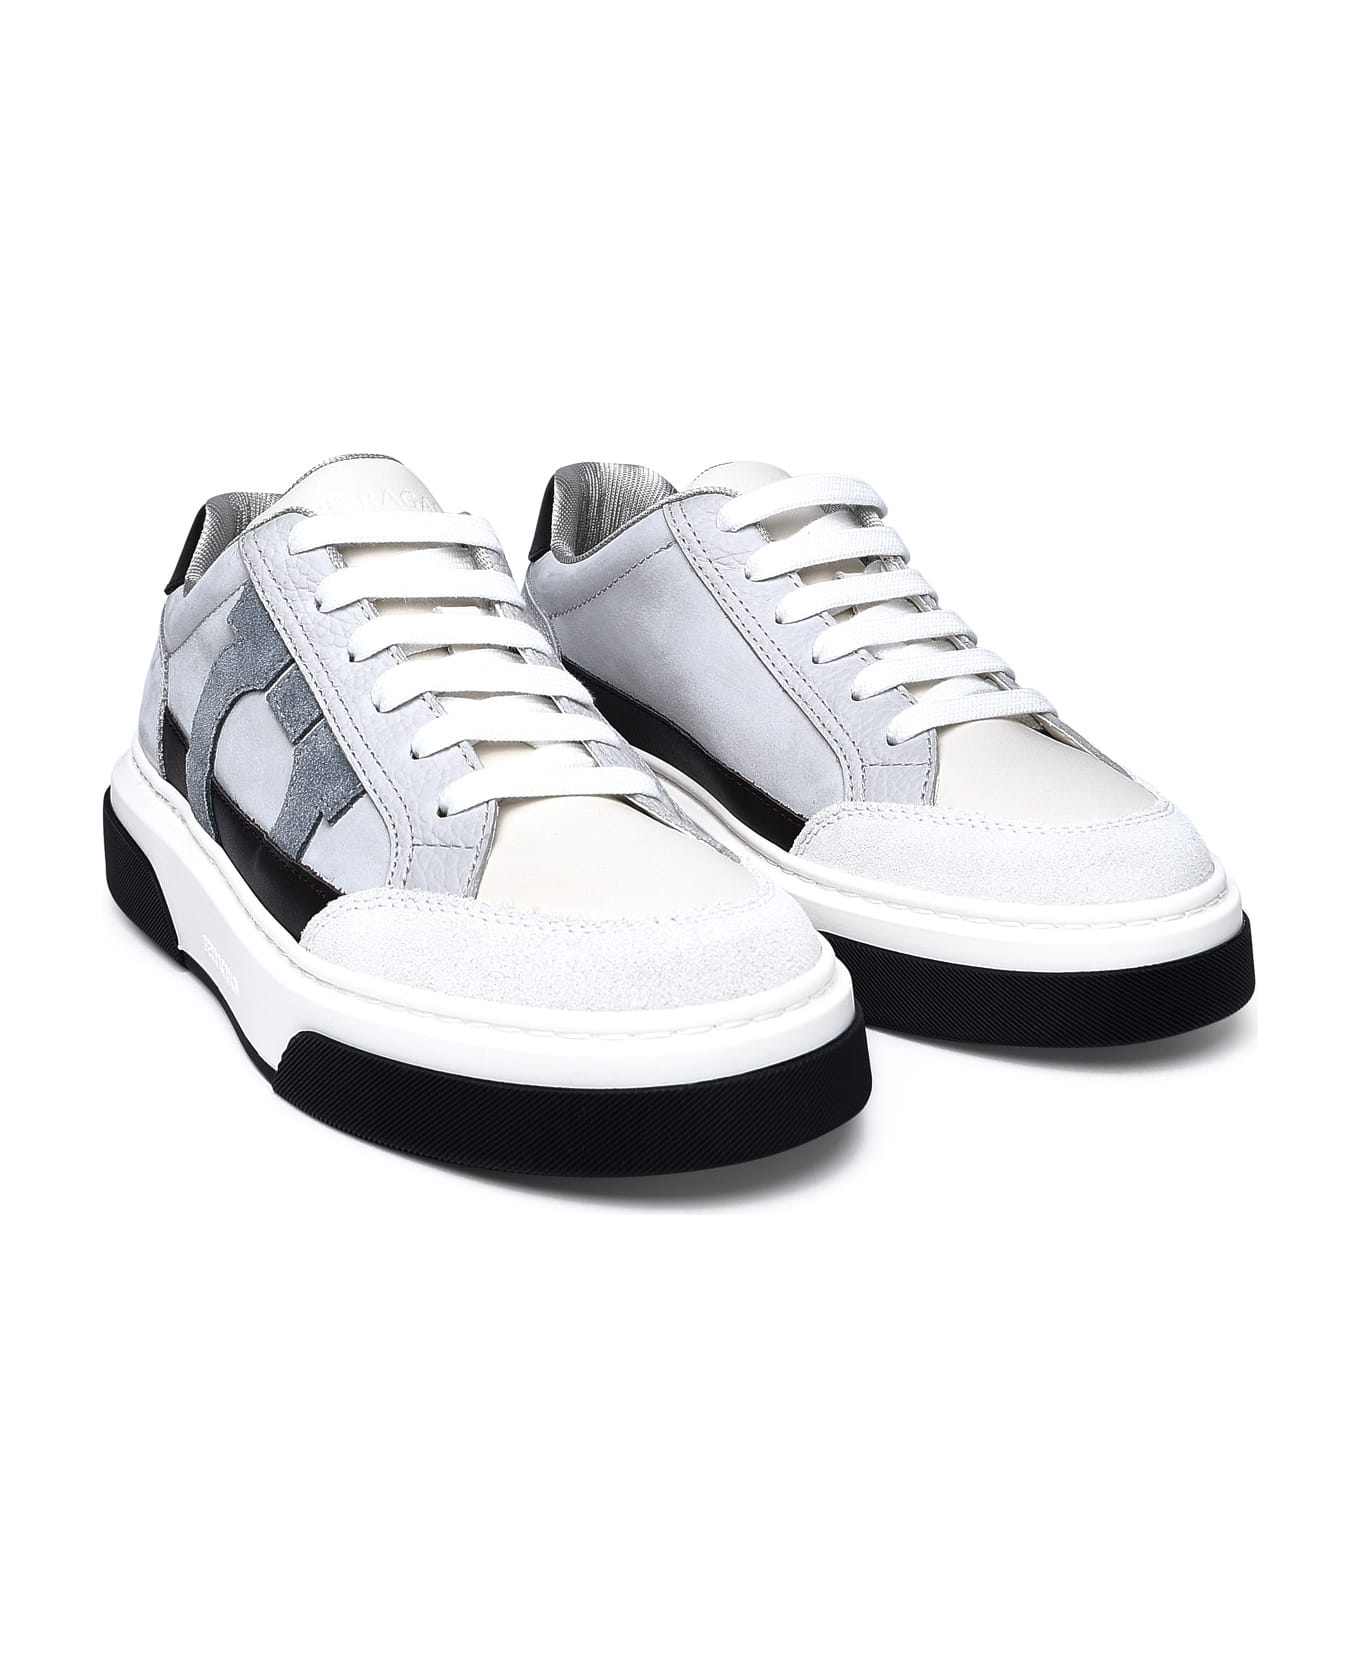 Ferragamo Multicolor Nappa Leather Sneakers - Bianco 511 スニーカー